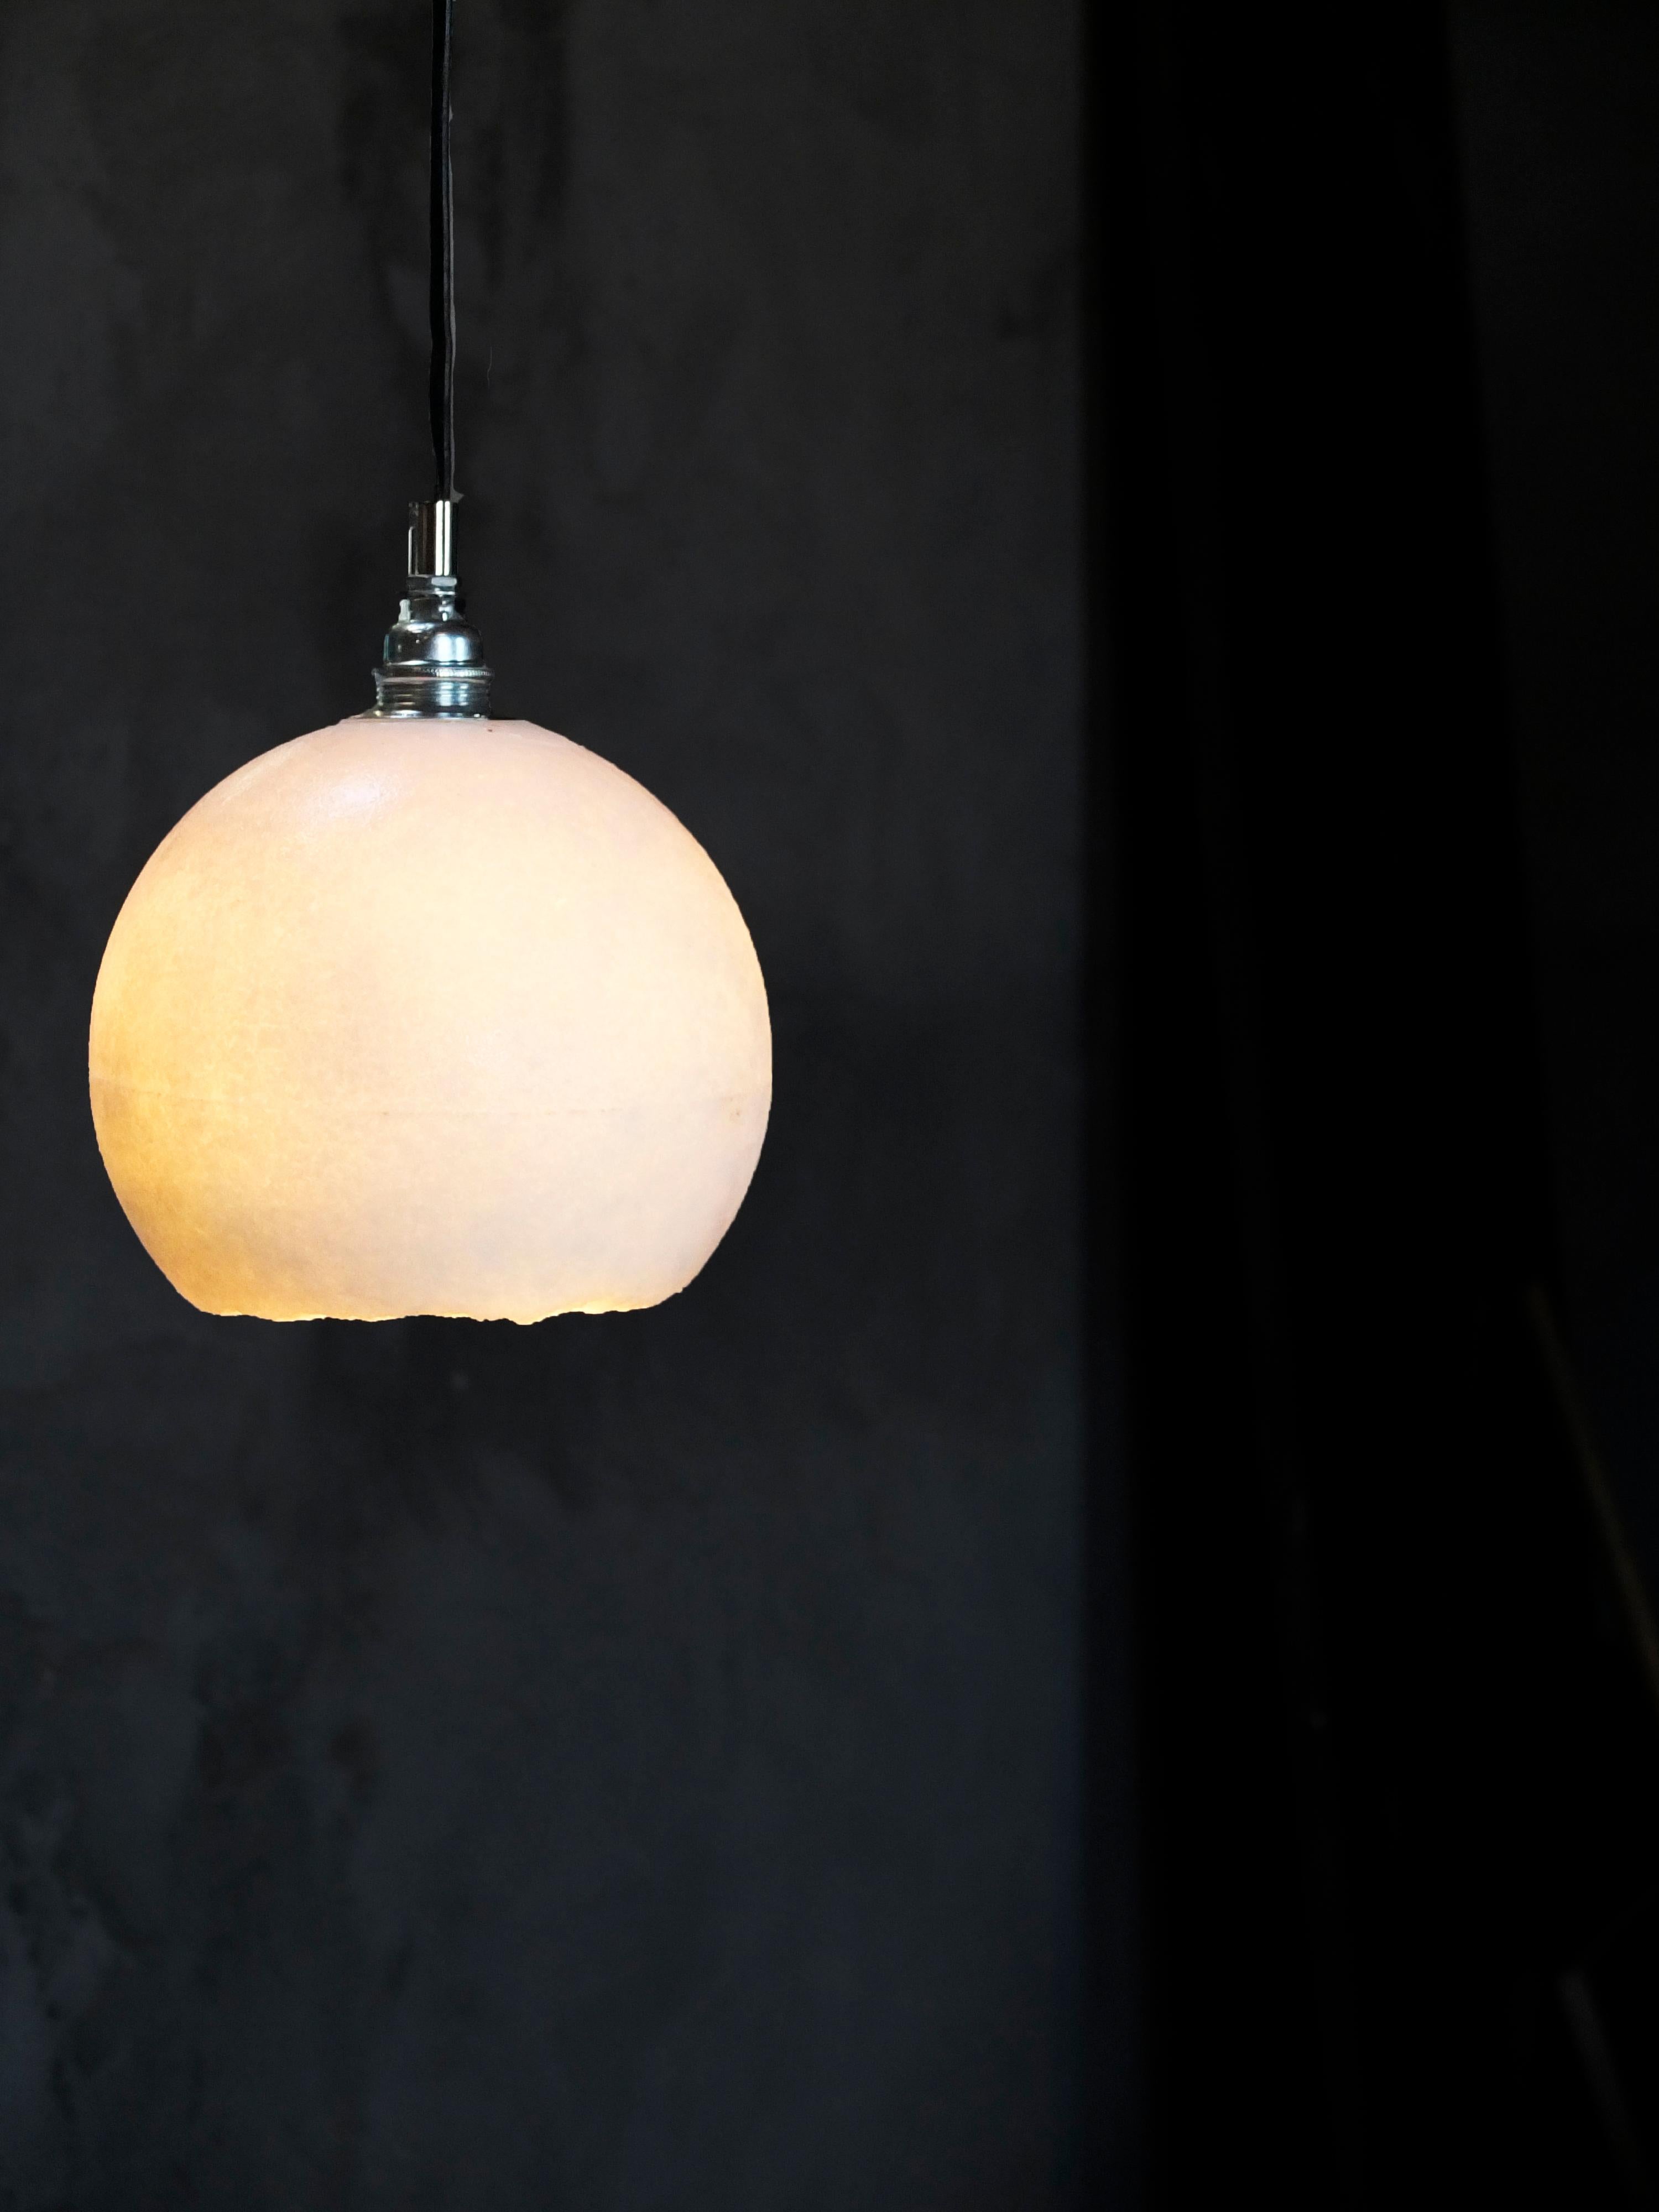 Ellipsen-Lampe von Roxane Lahidji
Abmessungen: D 35 x H 40 cm
MATERIAL: Marmorierte Salze
Eine einzigartige, preisgekrönte Technik, entwickelt von Roxane Lahidji

Preisträger der Bolia Design Awards 2019 und FD100 und in den Sammlungen des Design